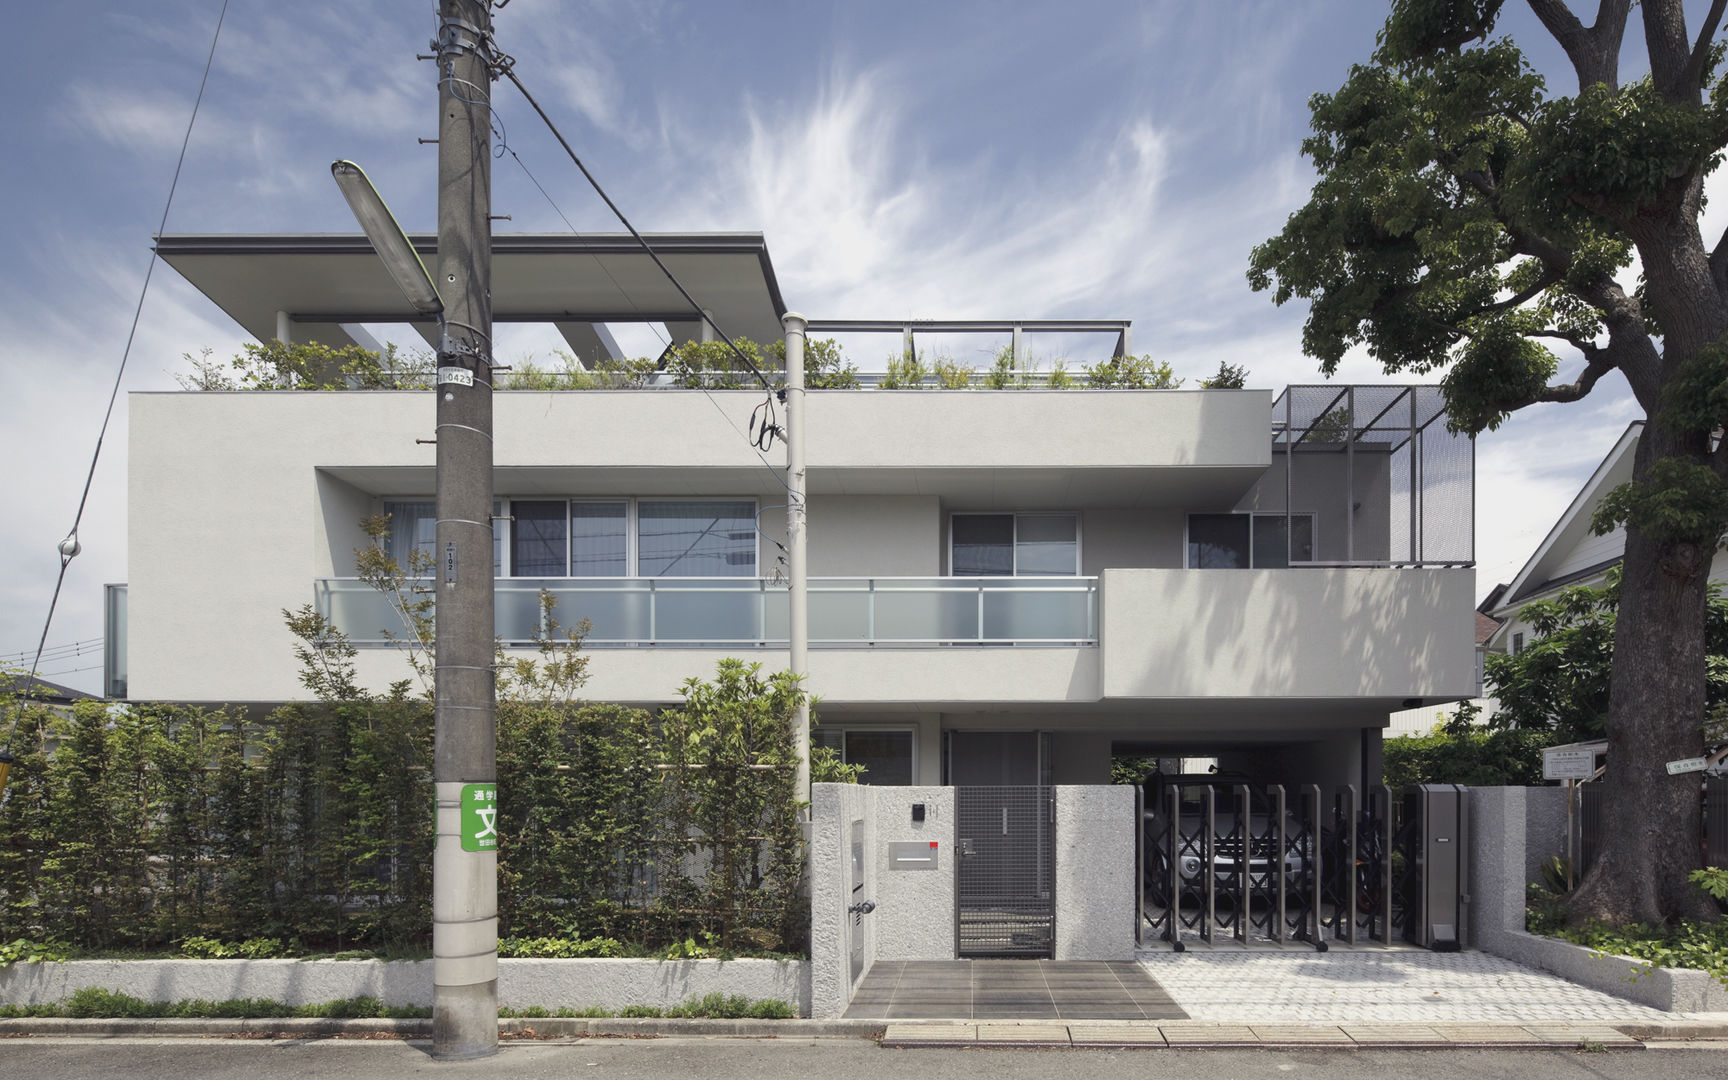 ミドセンチュリーテイスト 居間がテラスと一体化して繋がる成城の住まい, JWA，Jun Watanabe & Associates JWA，Jun Watanabe & Associates منازل